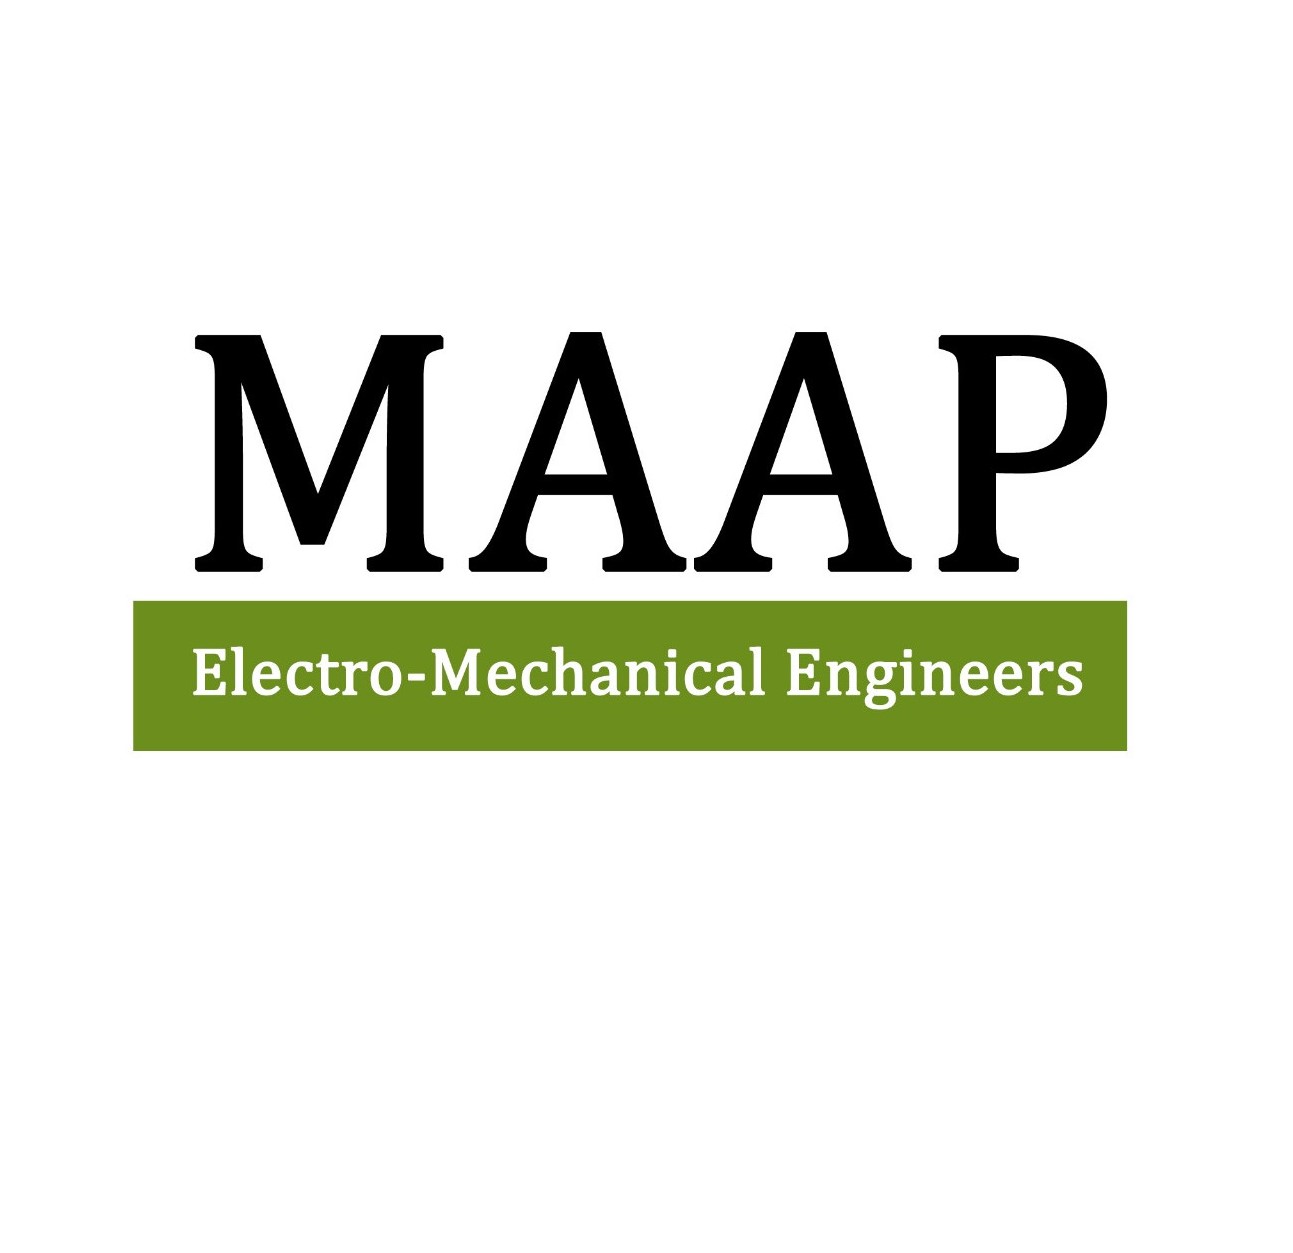 MAAP Electro-Mechanical Engineers